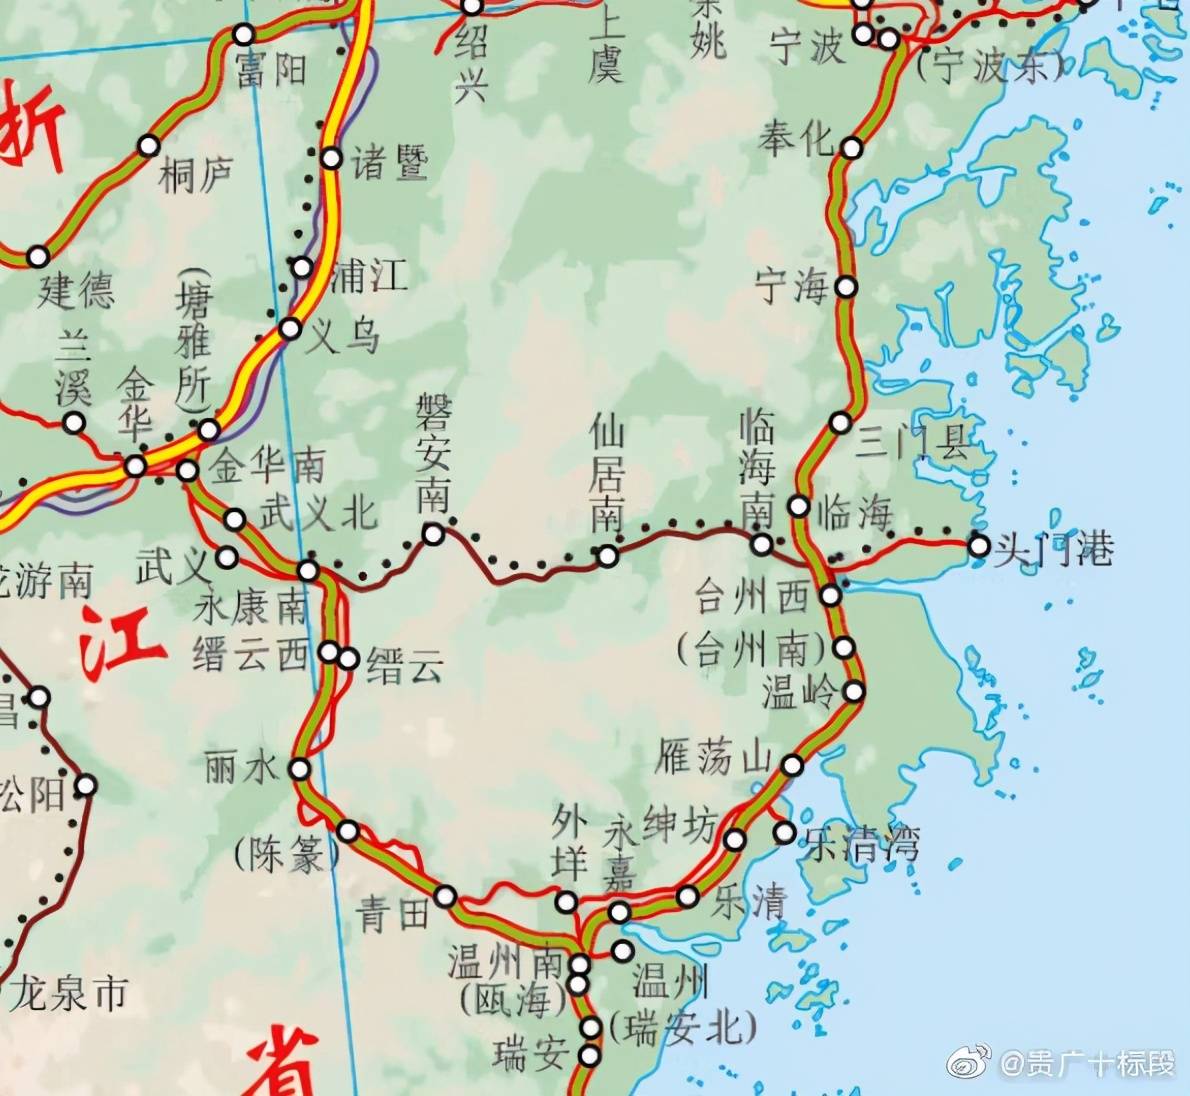 中国铁路营业线路图更新版(2021.7.1)